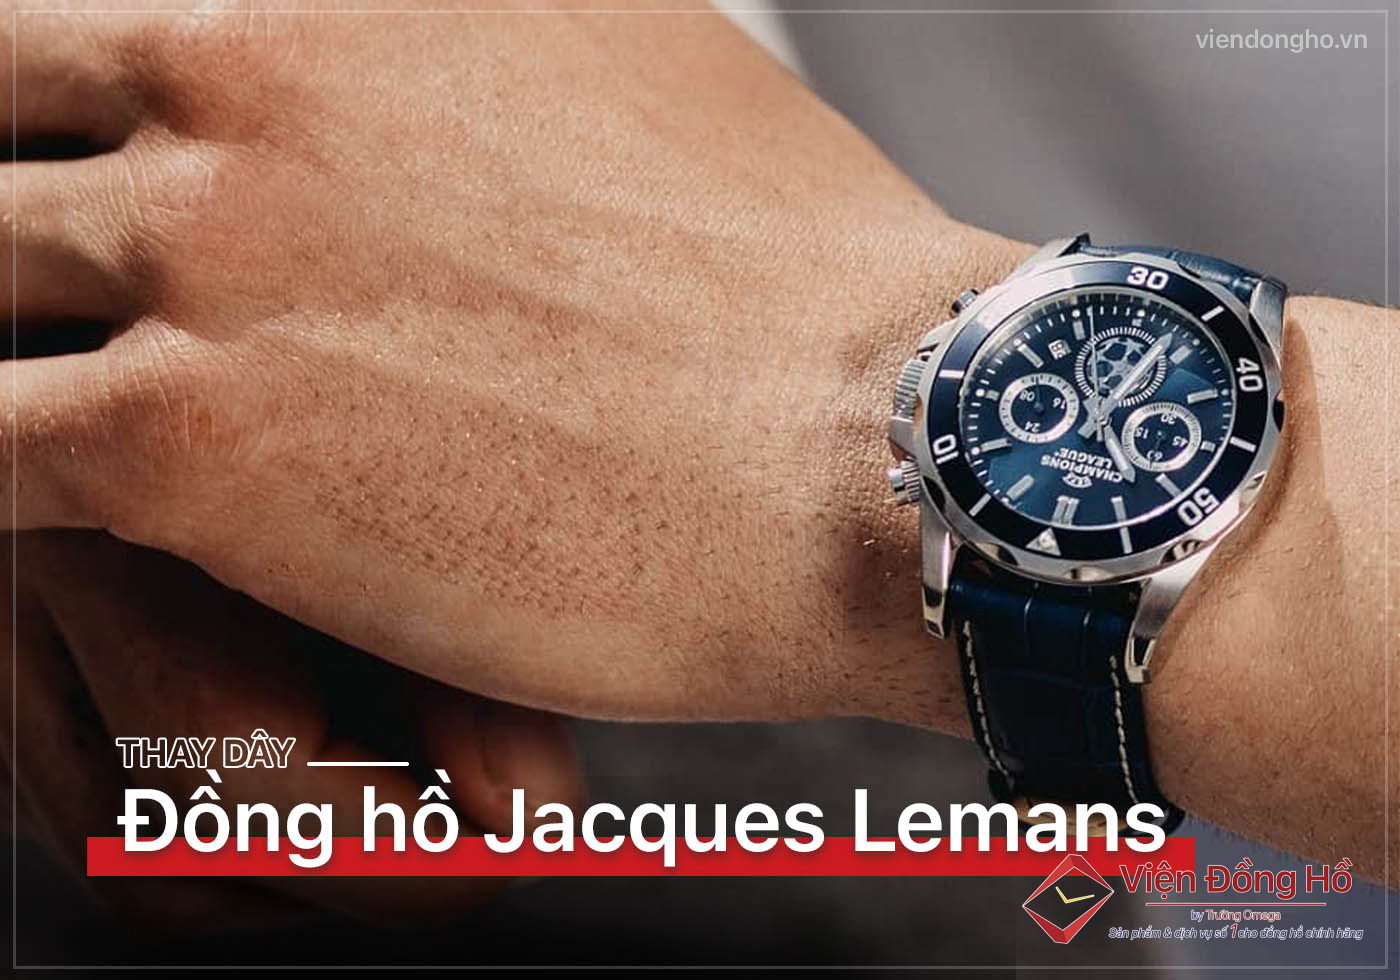 Chi tiết với hơn 160 về lịch sử đồng hồ jacques lemans hay nhất